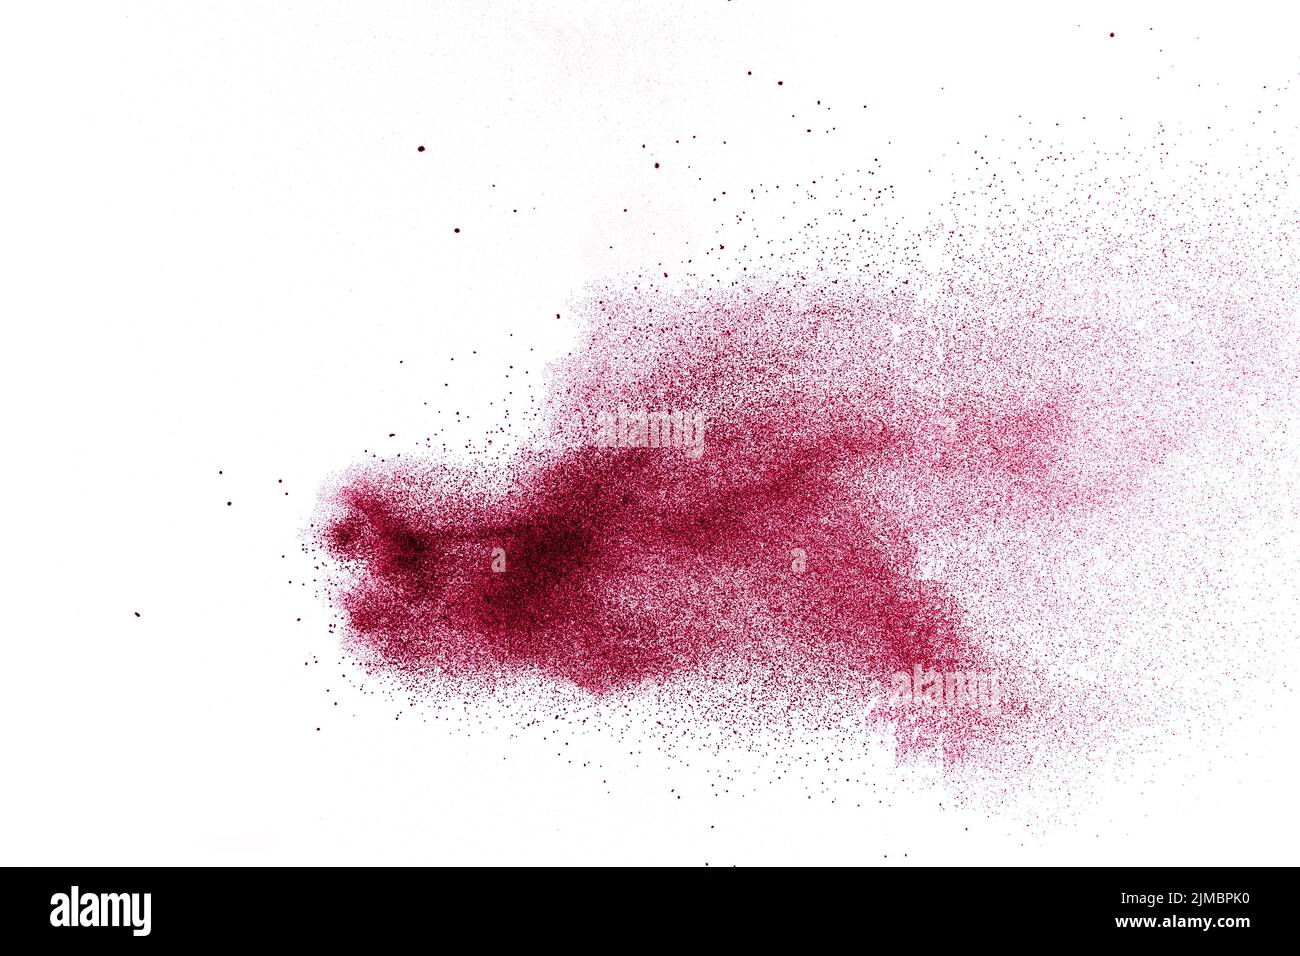 Polvere rossa astratta spruzzata su sfondo bianco. Esplosione di polvere rossa. Congelare il movimento della particella rossa Foto Stock